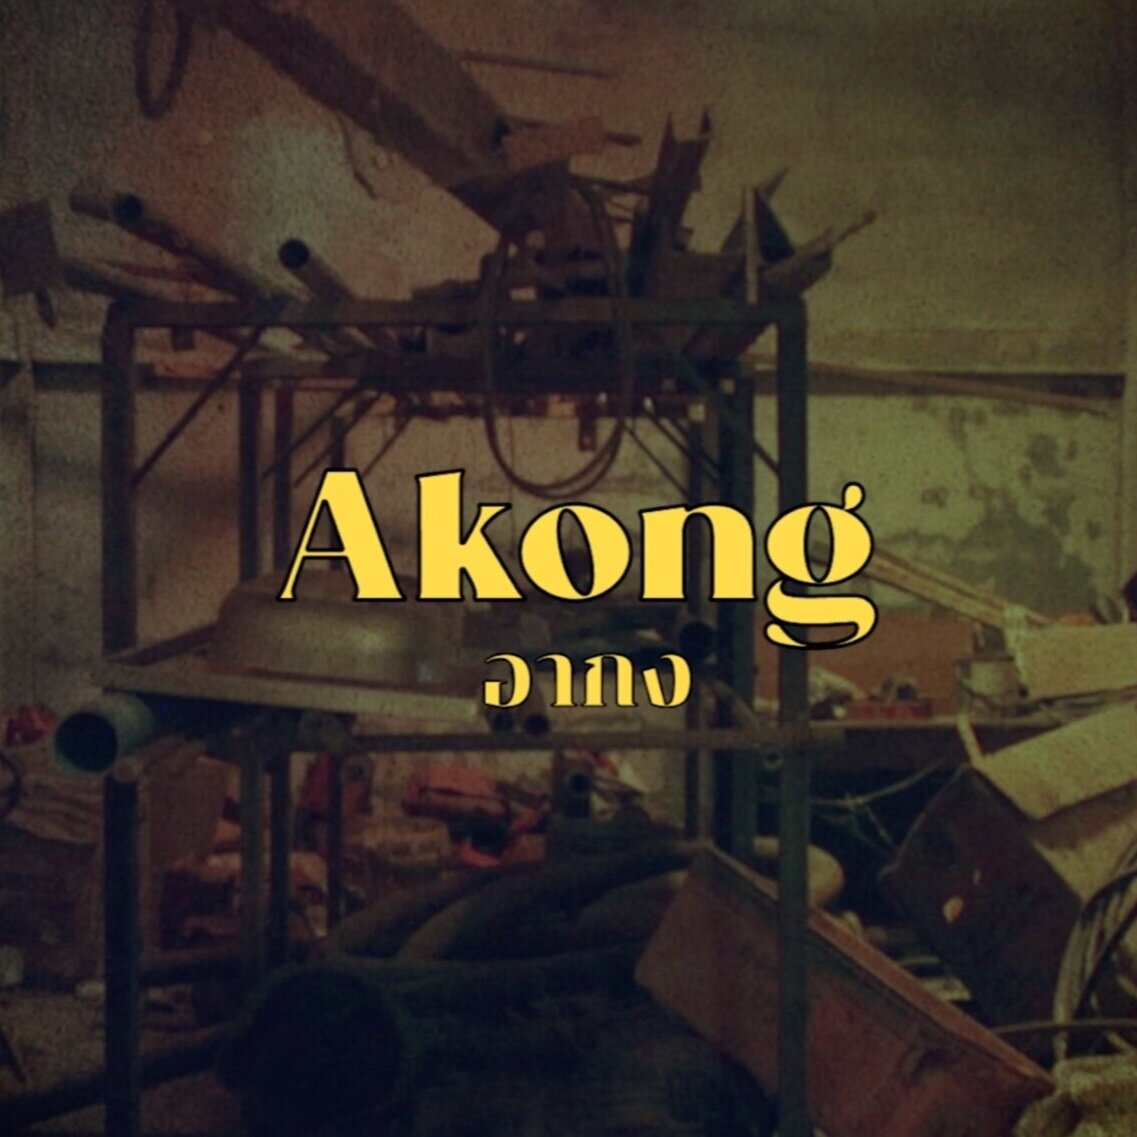 Akong